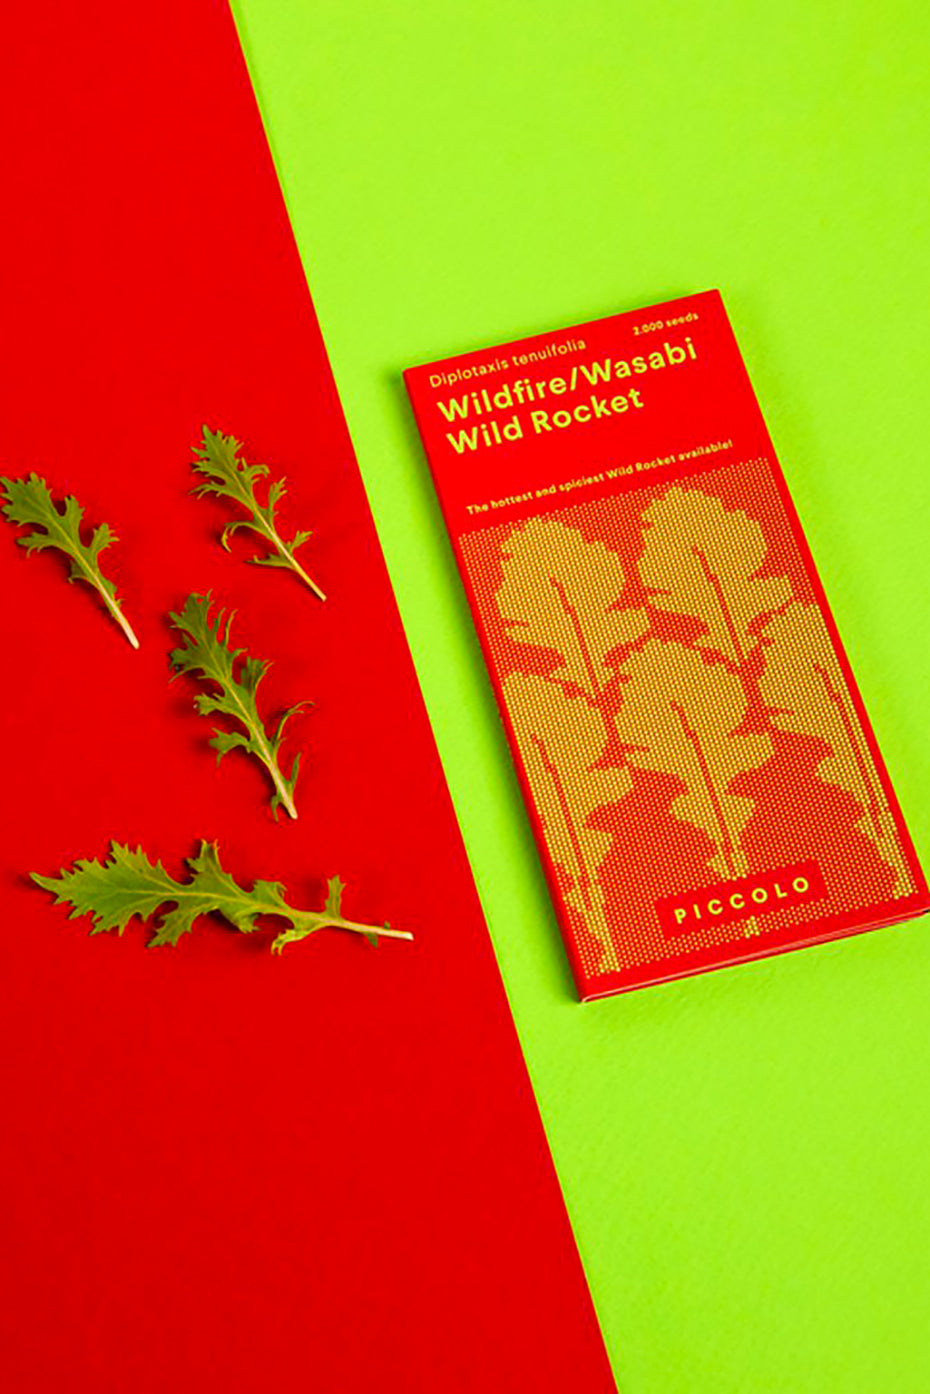 Wild Rocket Wildfire-Wasabi Rucola